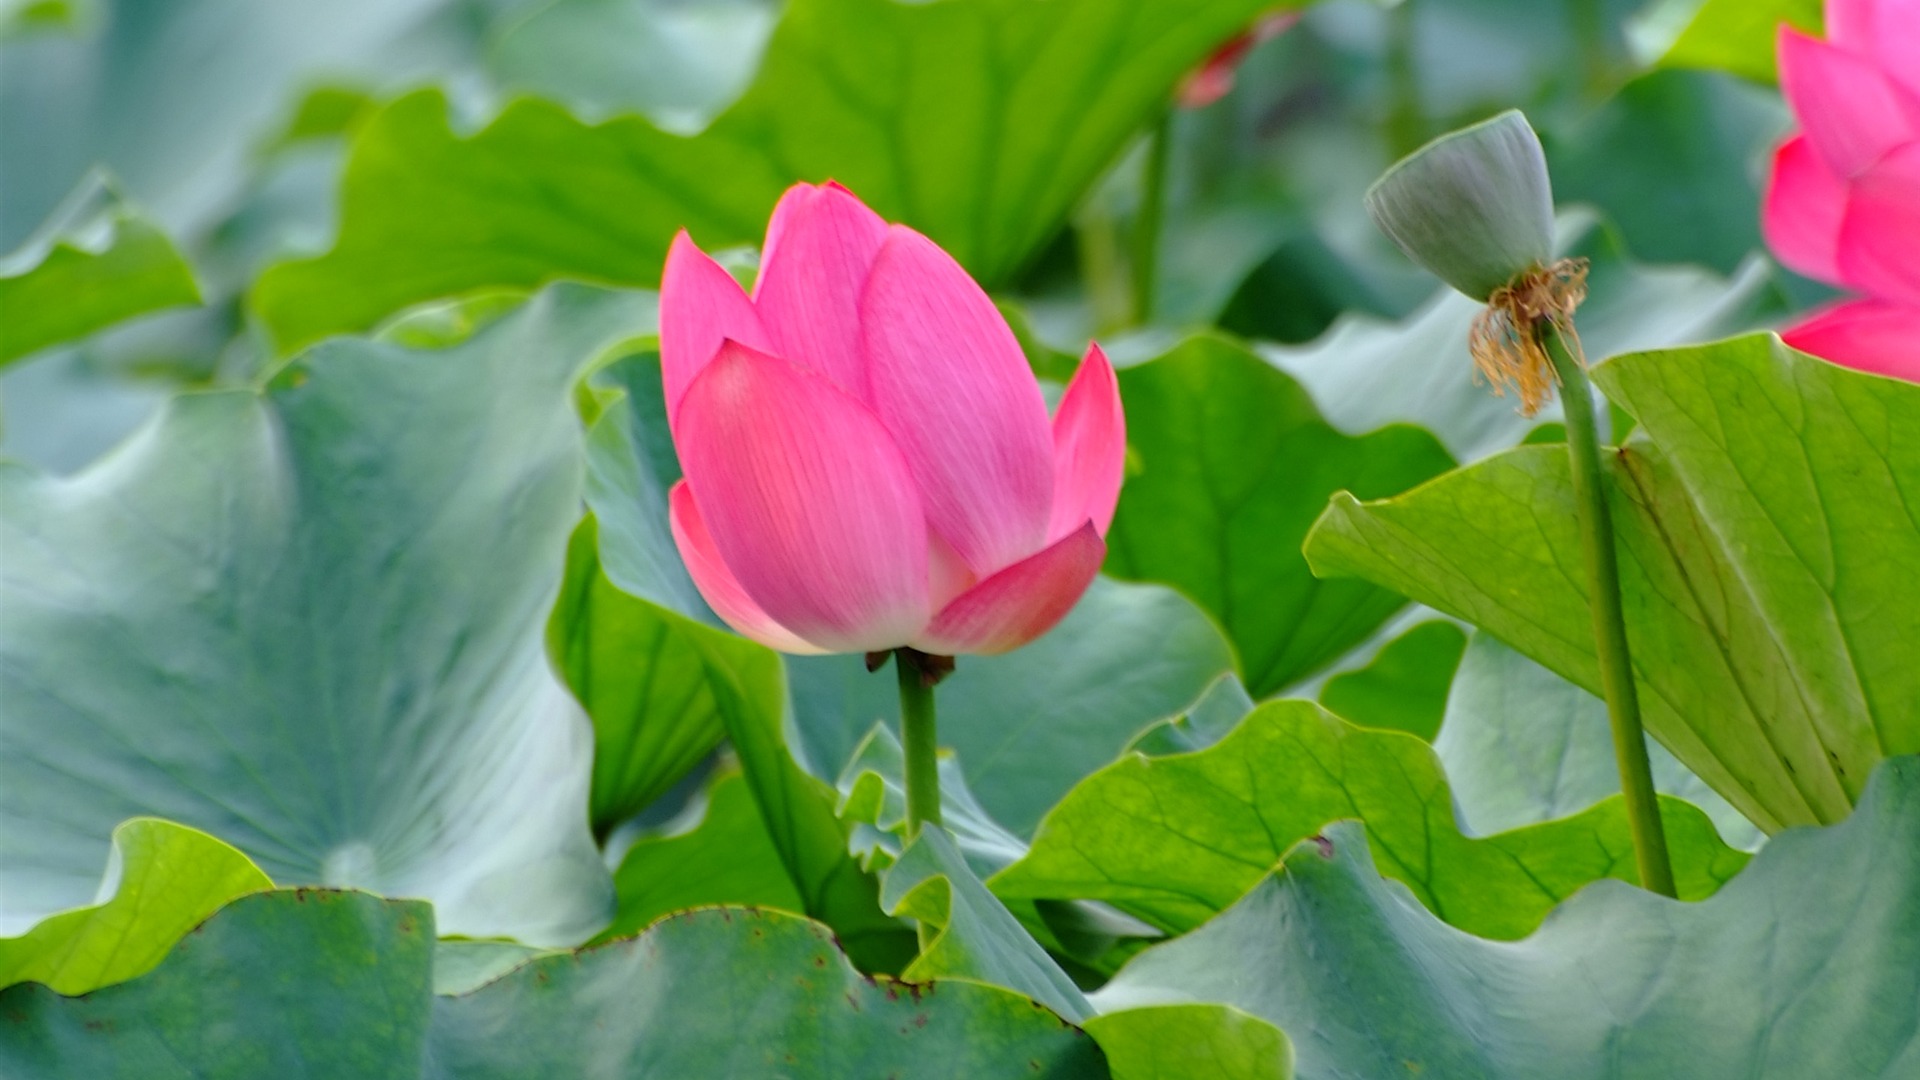 Rose Garden of the Lotus (rebar works) #7 - 1920x1080